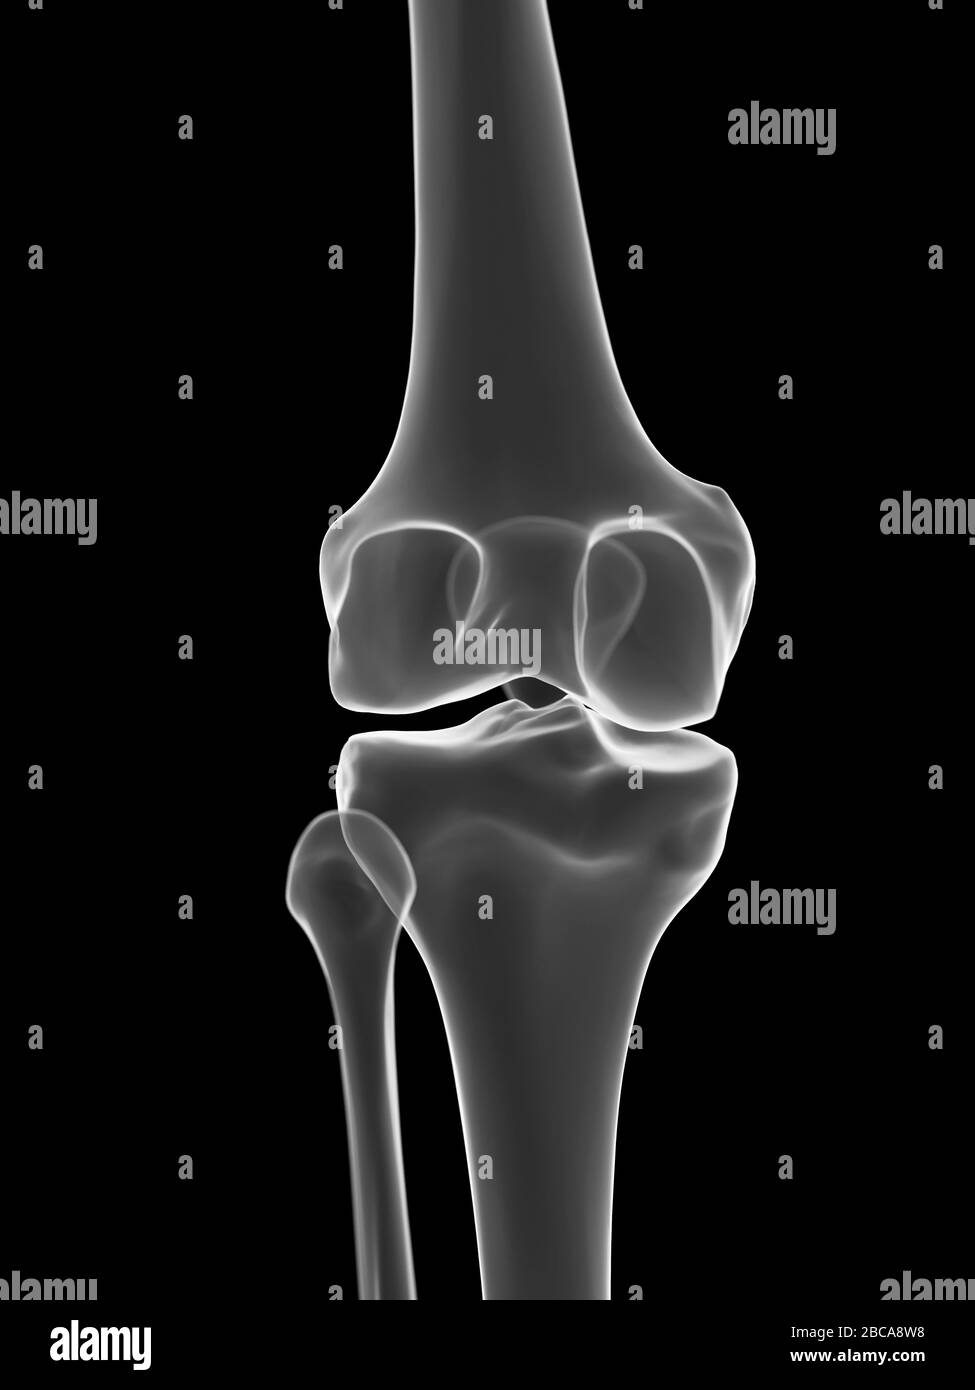 Knee joint, illustration Stock Photo - Alamy